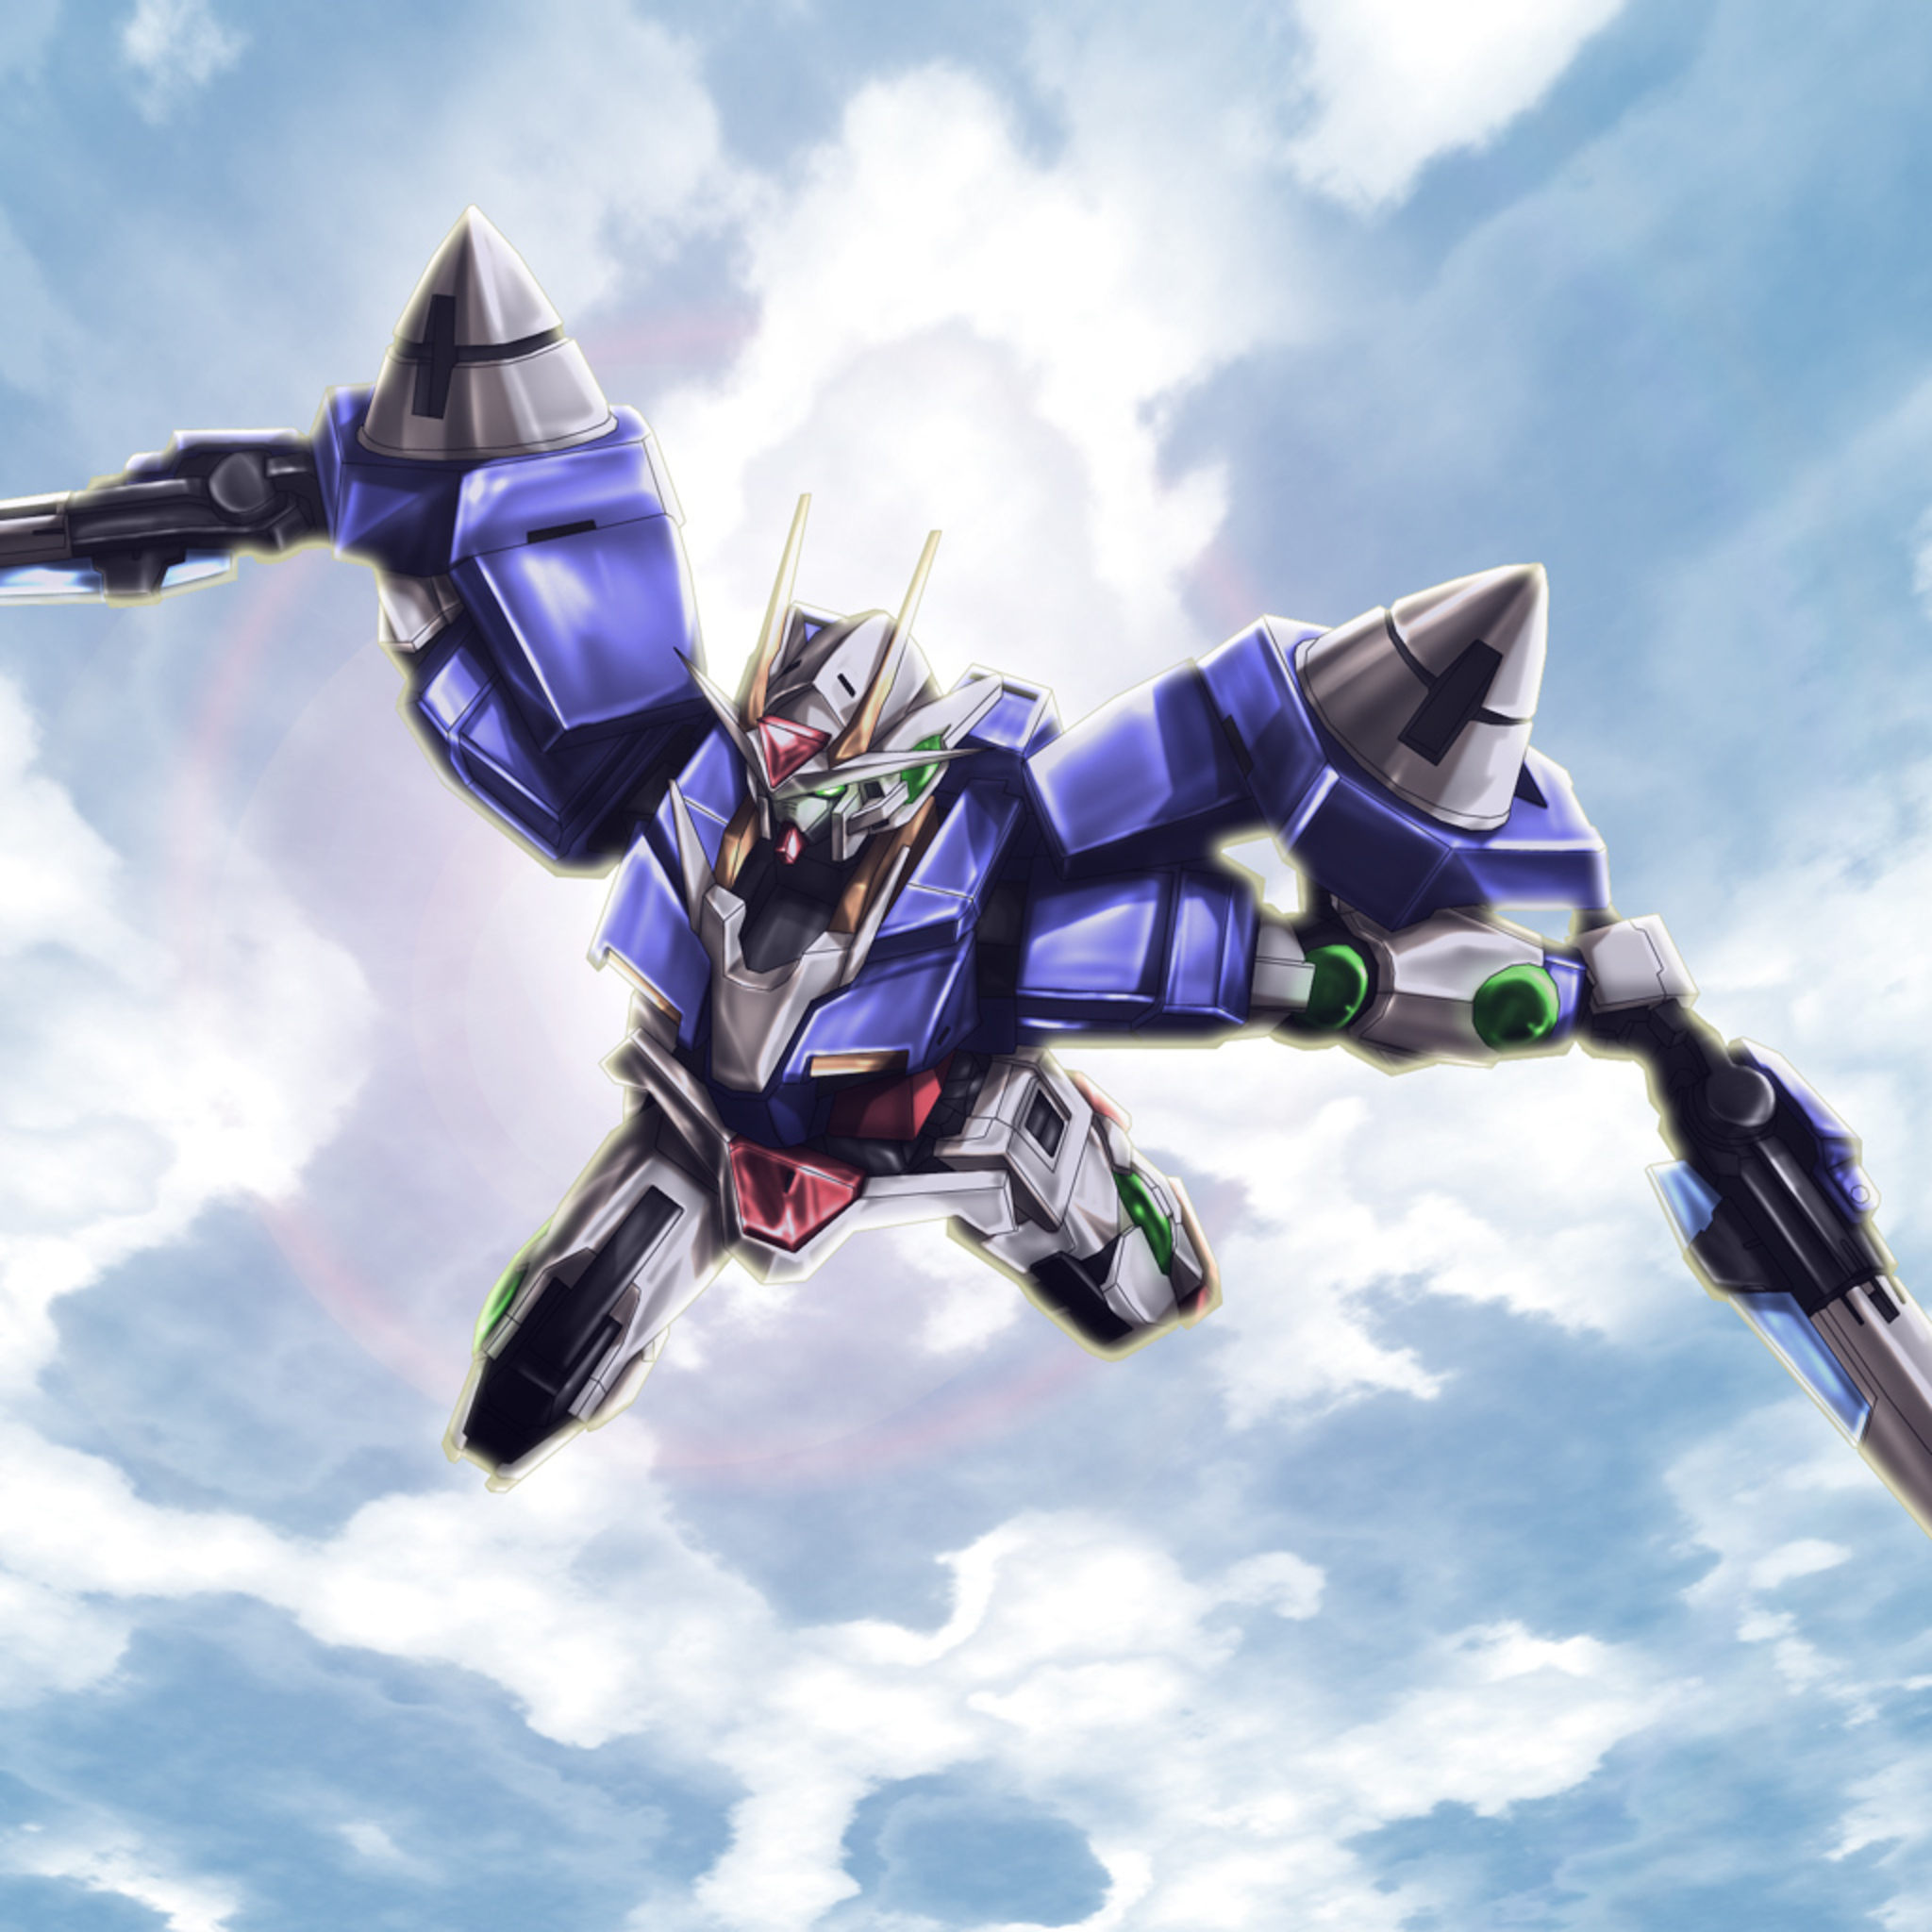 00 Gundam Mobile Suit Gundam 00 Anime Mechs Gundam Super Robot Wars Artwork Digital Art Fan Art 2048x2048